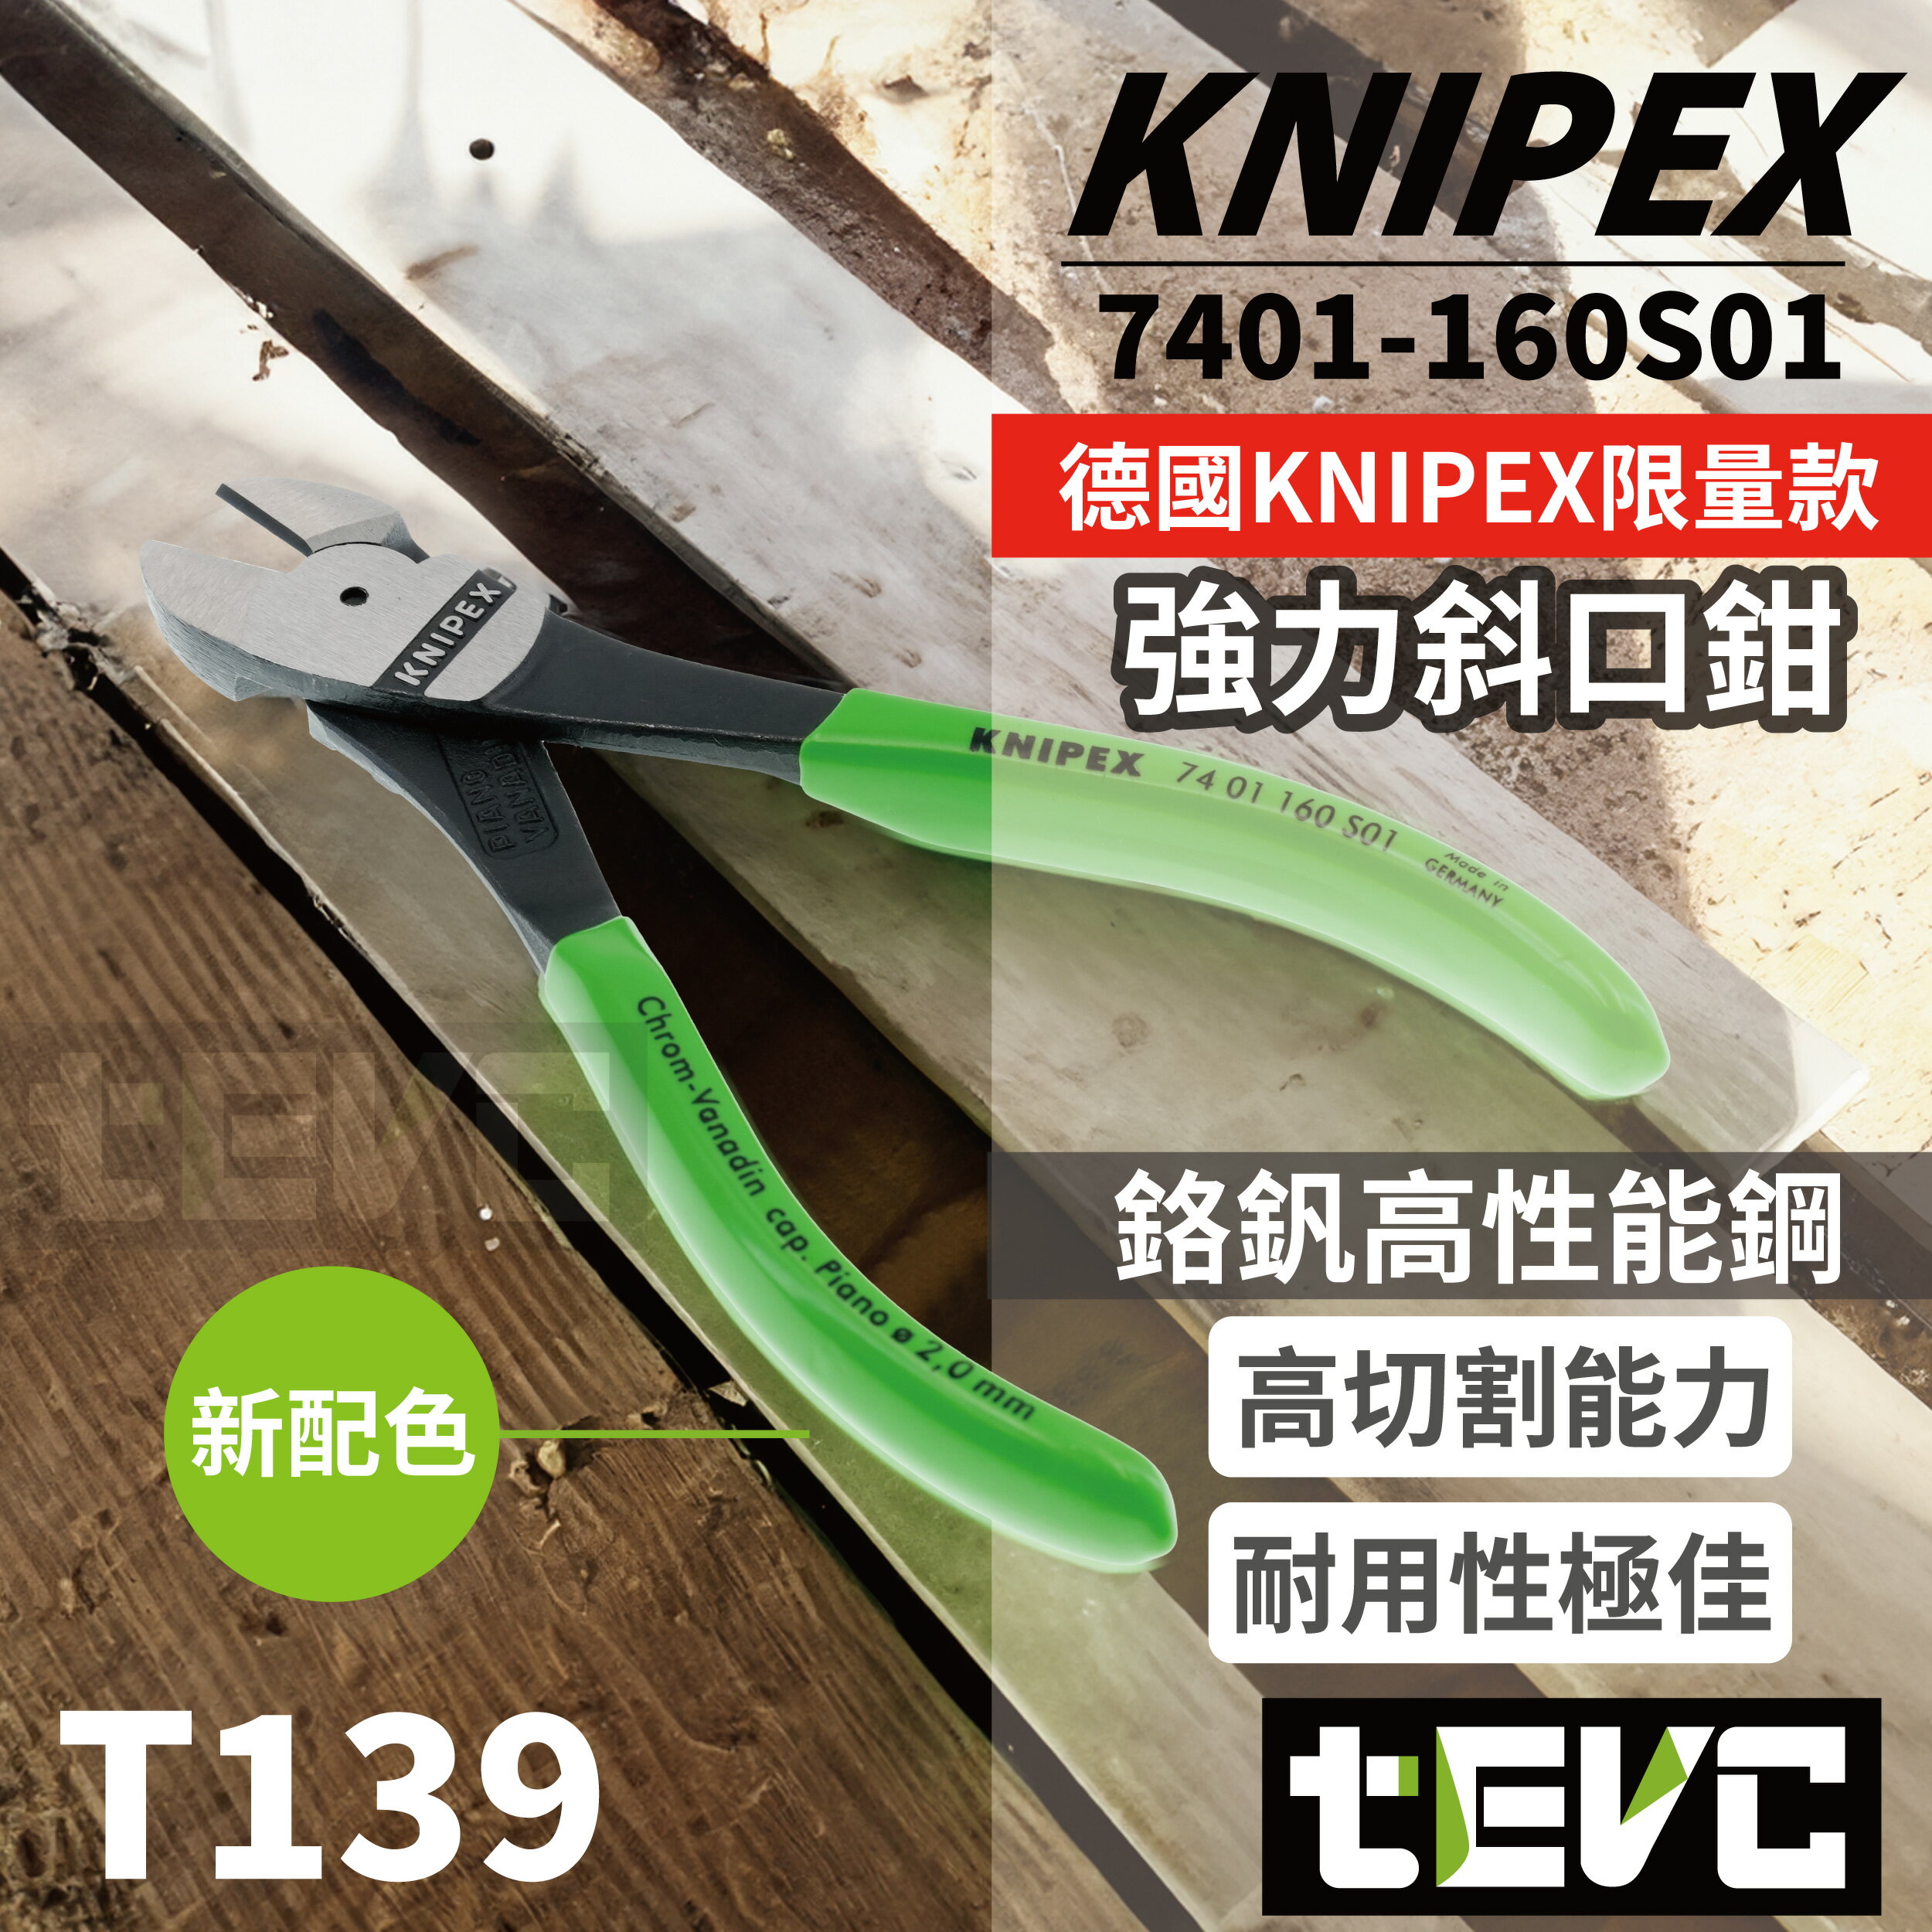 《tevc》含稅 發票 現貨 德國 KNIPEX K牌 限量色 強力斜口鉗 超高硬度 硬線 軟線 高槓桿 強力型 斜口鉗